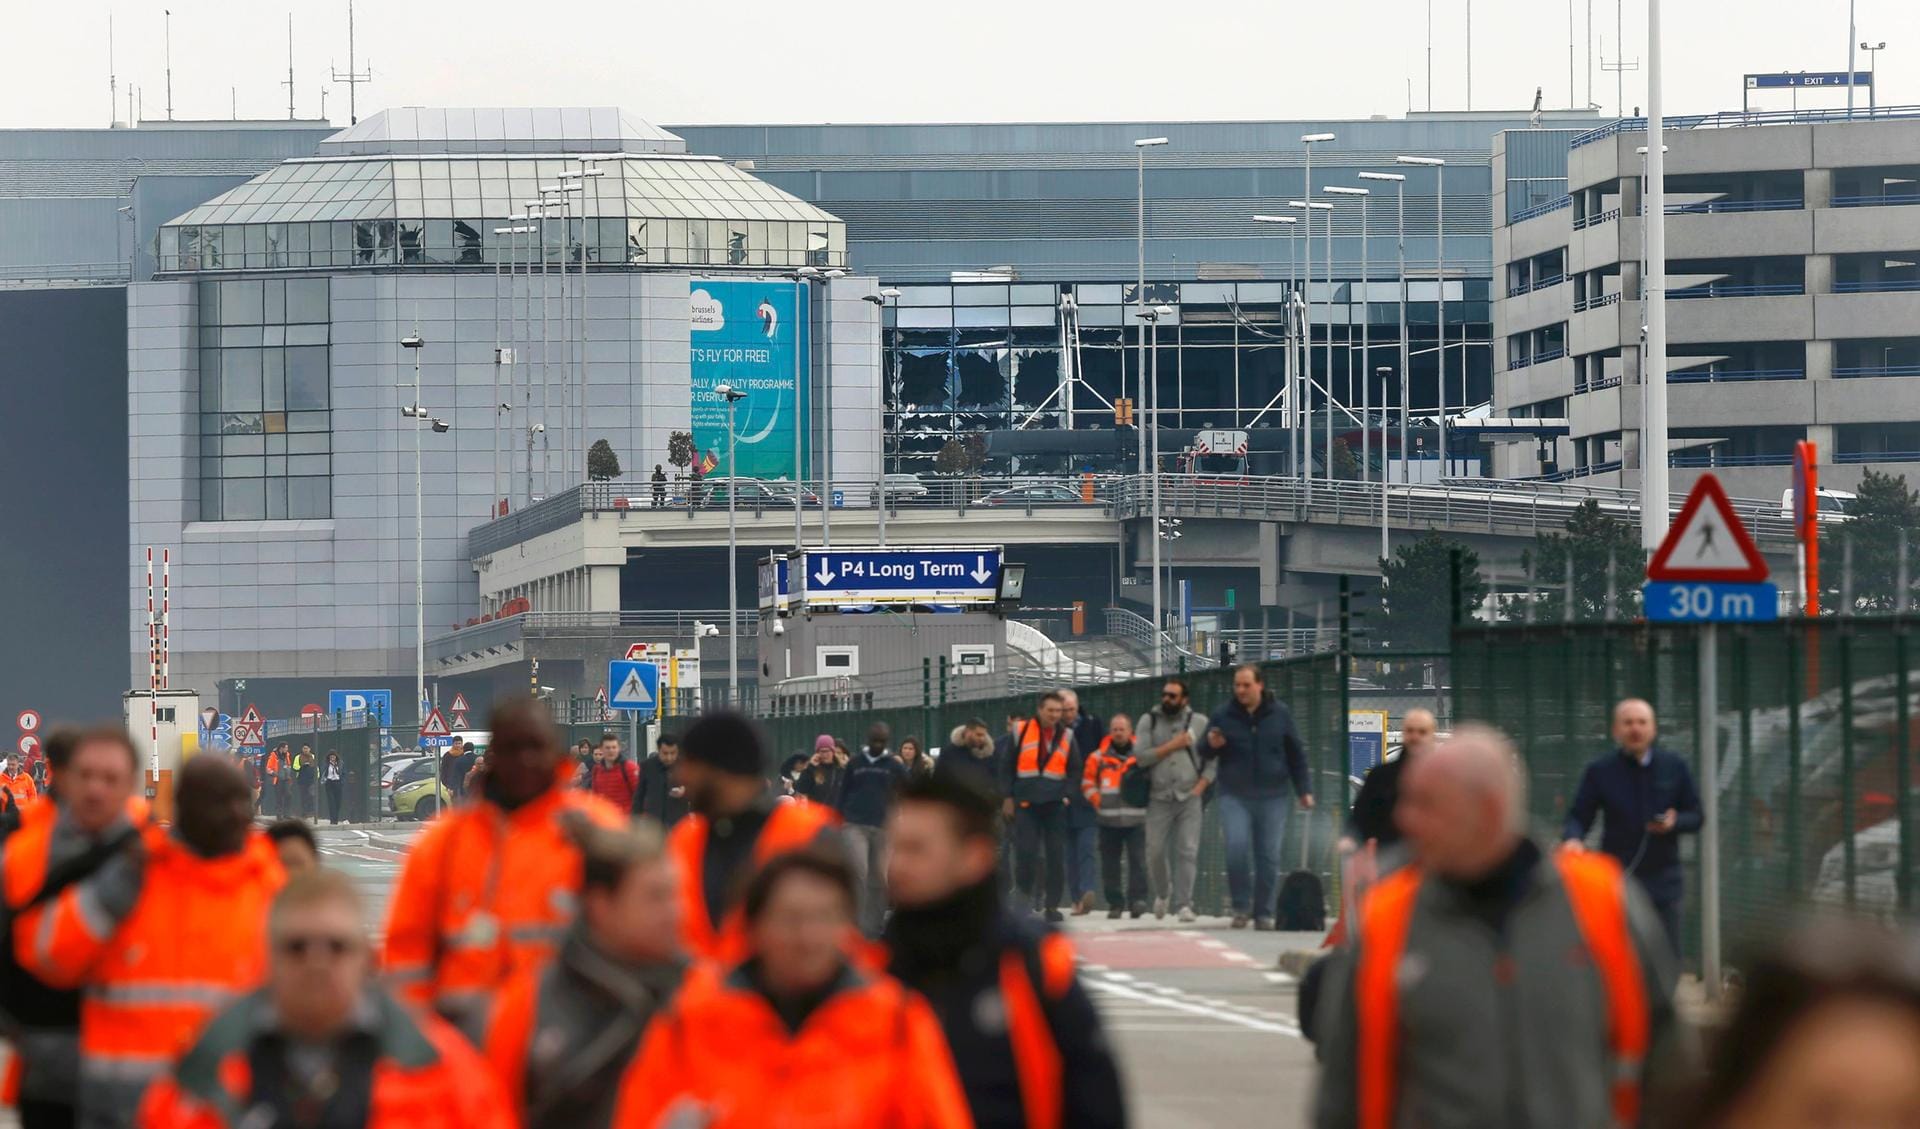 Der Flughafen wurde nach den Anschlägen sofort evakuiert.